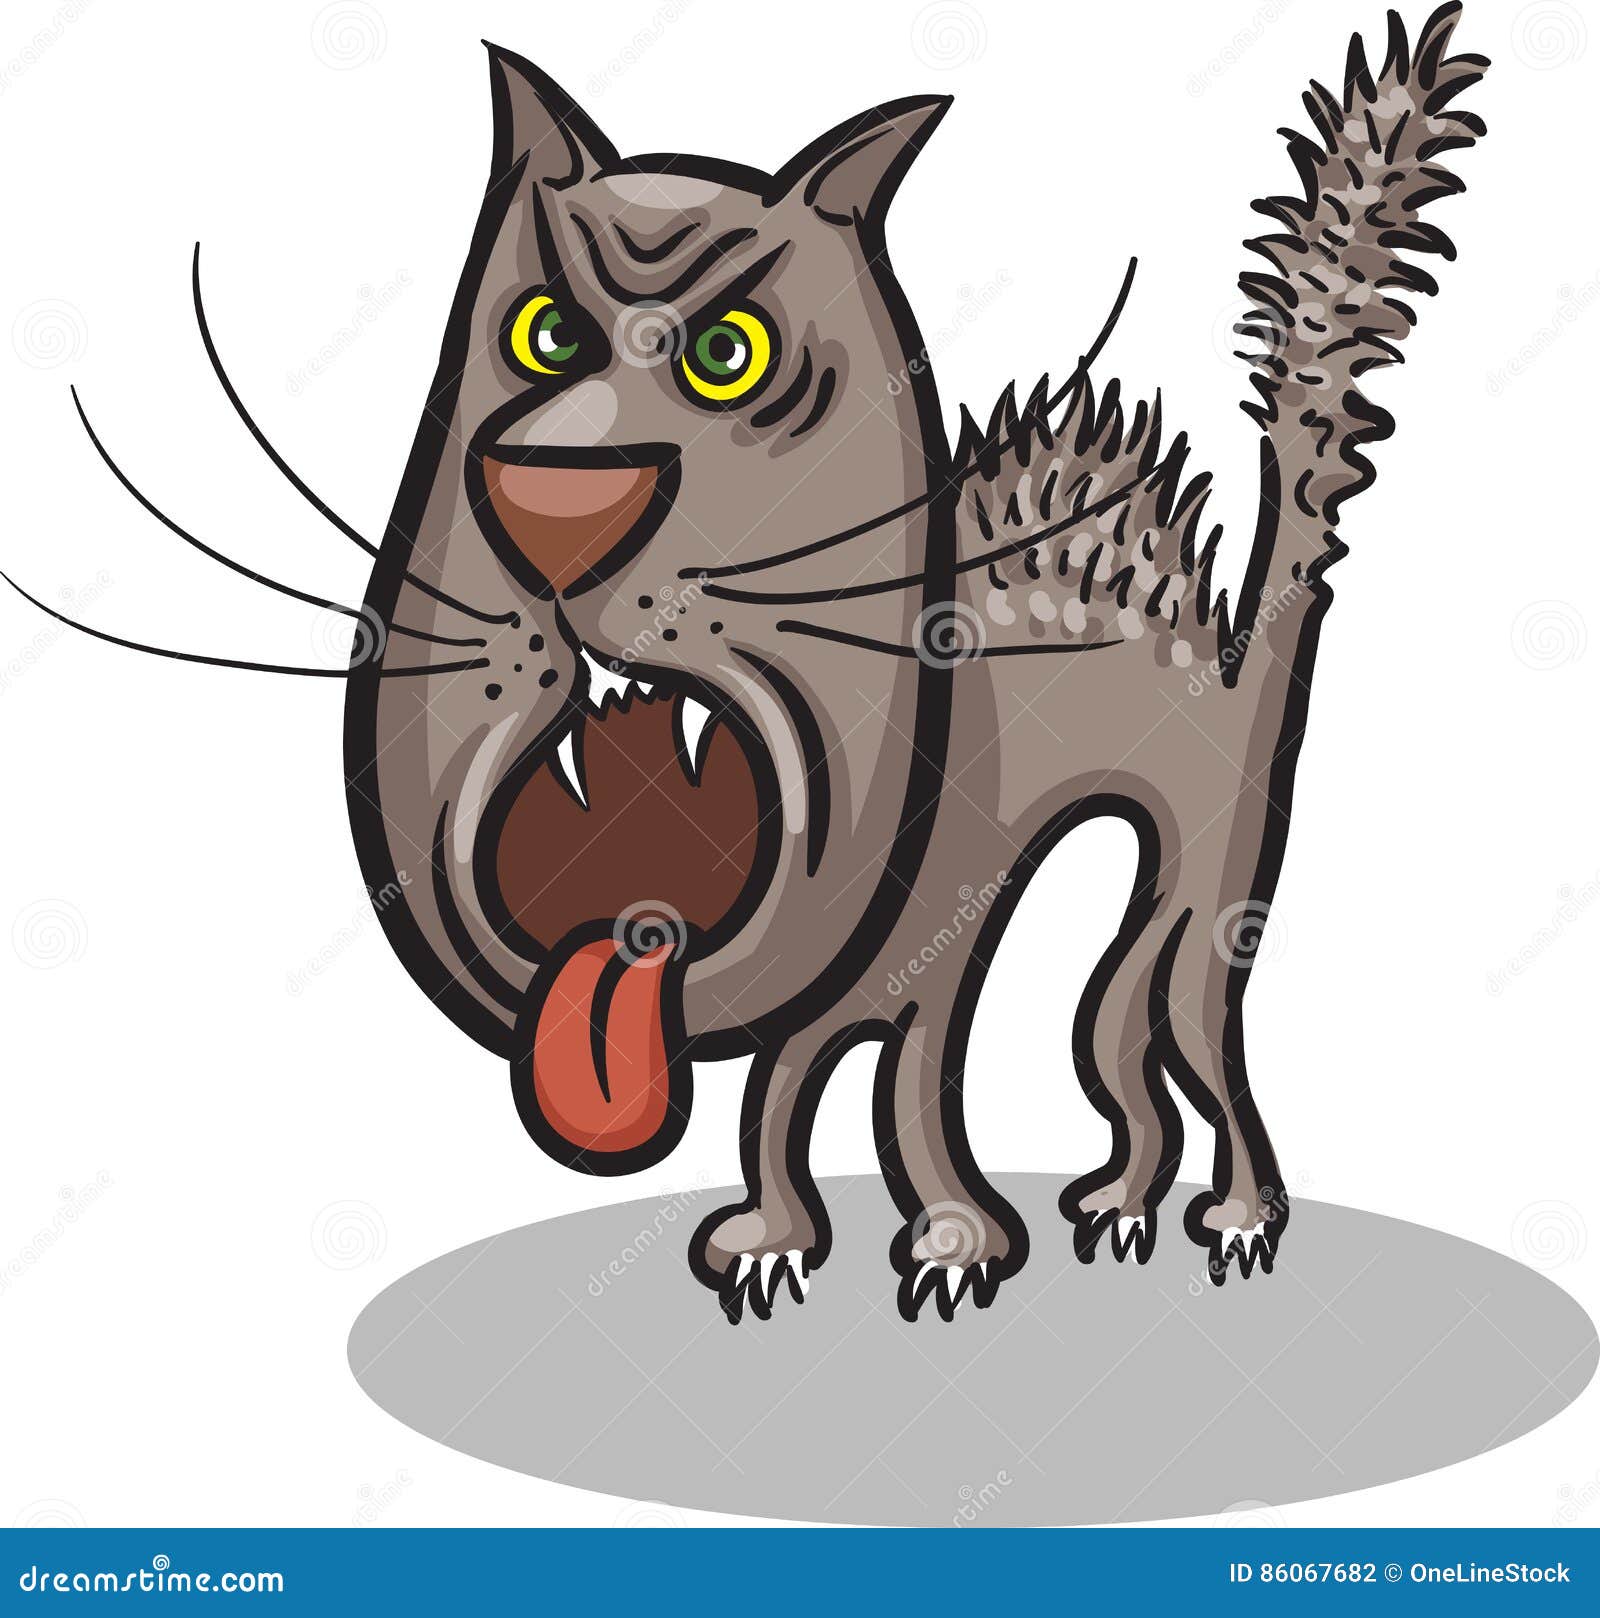 Mad cat stock vector. Illustration of emotion, cartoon - 86067682